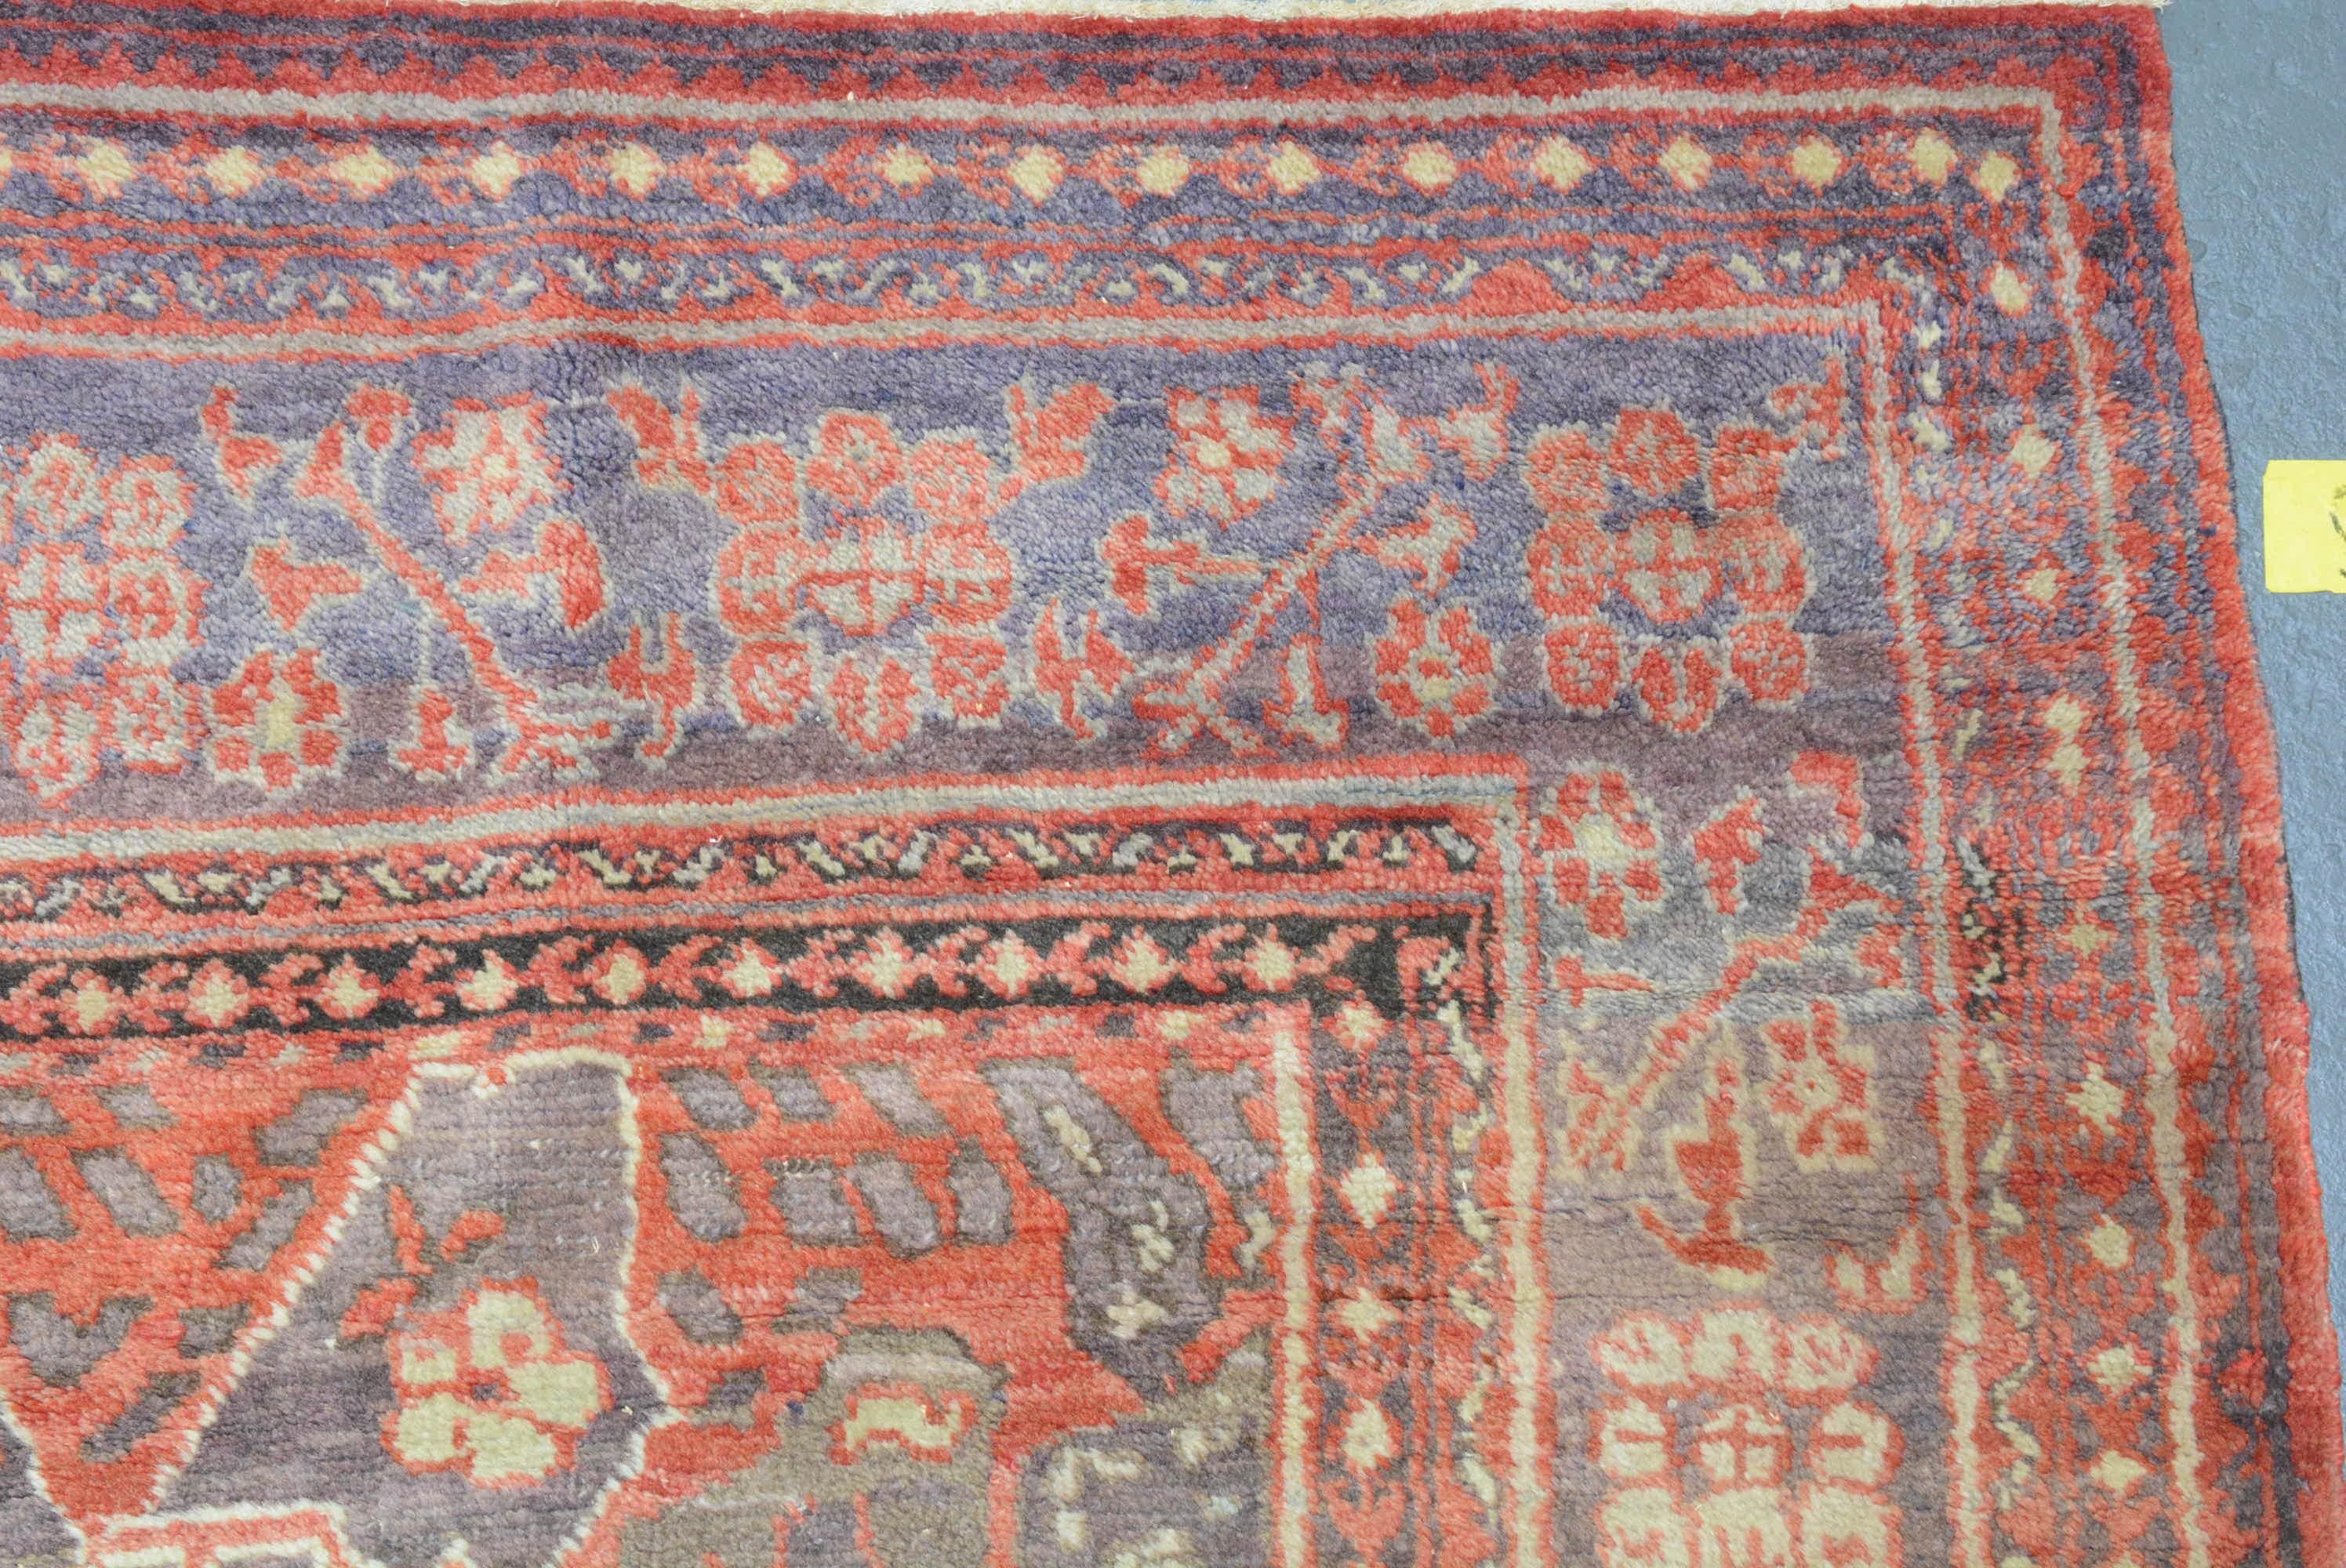 Woven Antique Khotan Carpet For Sale